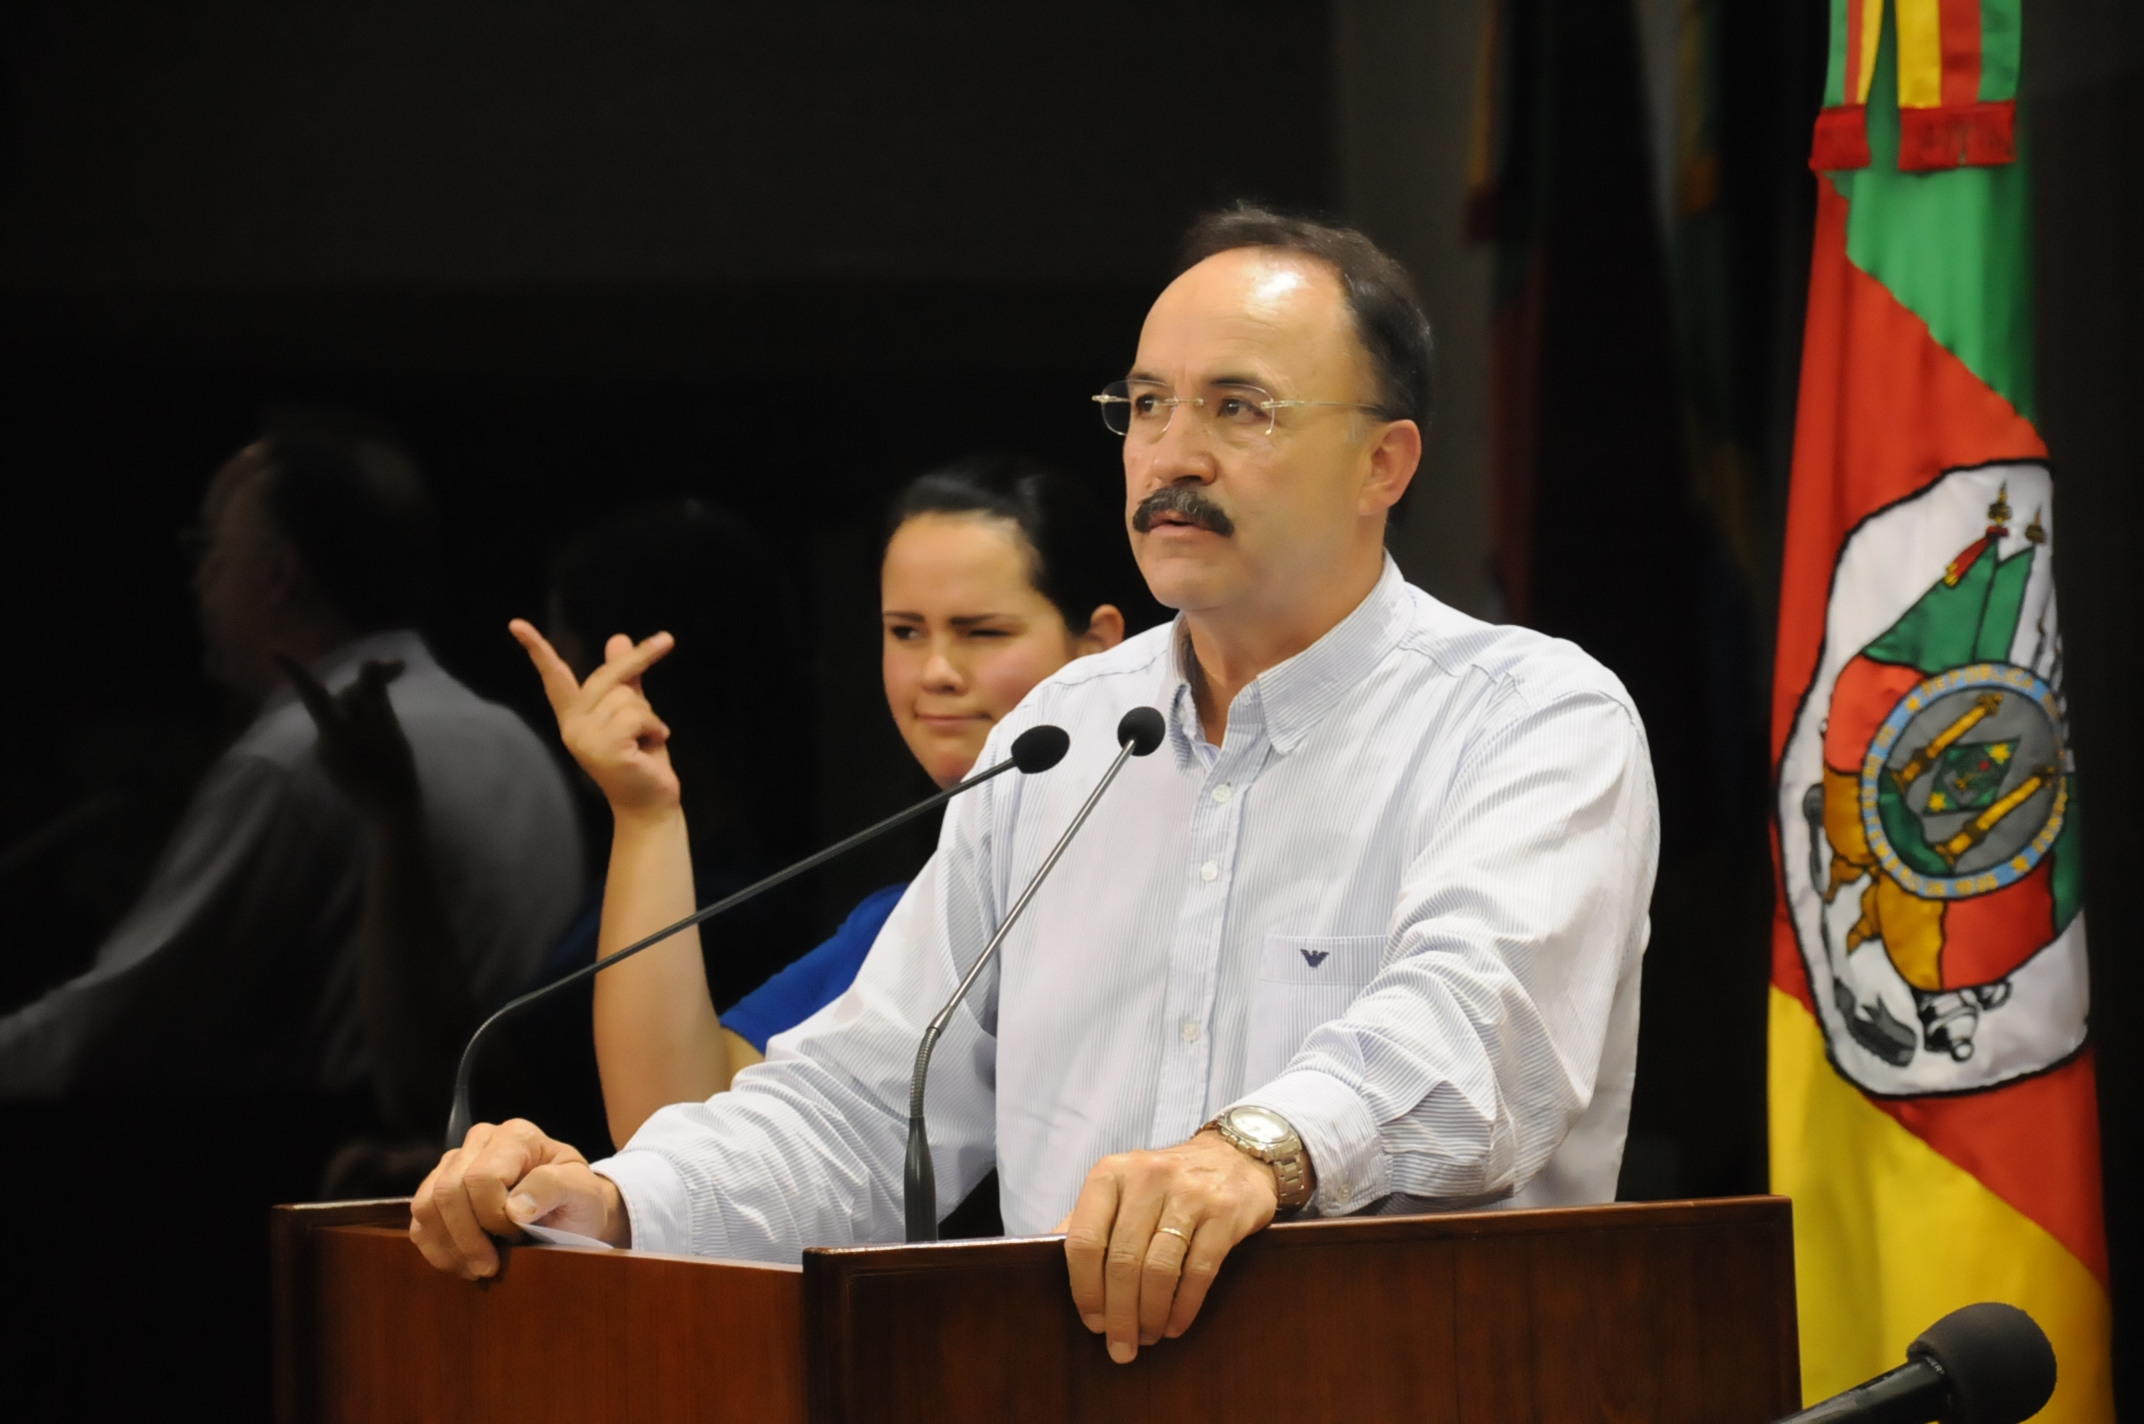 Mauro comenta sobre audiência no Ministério Público Federal